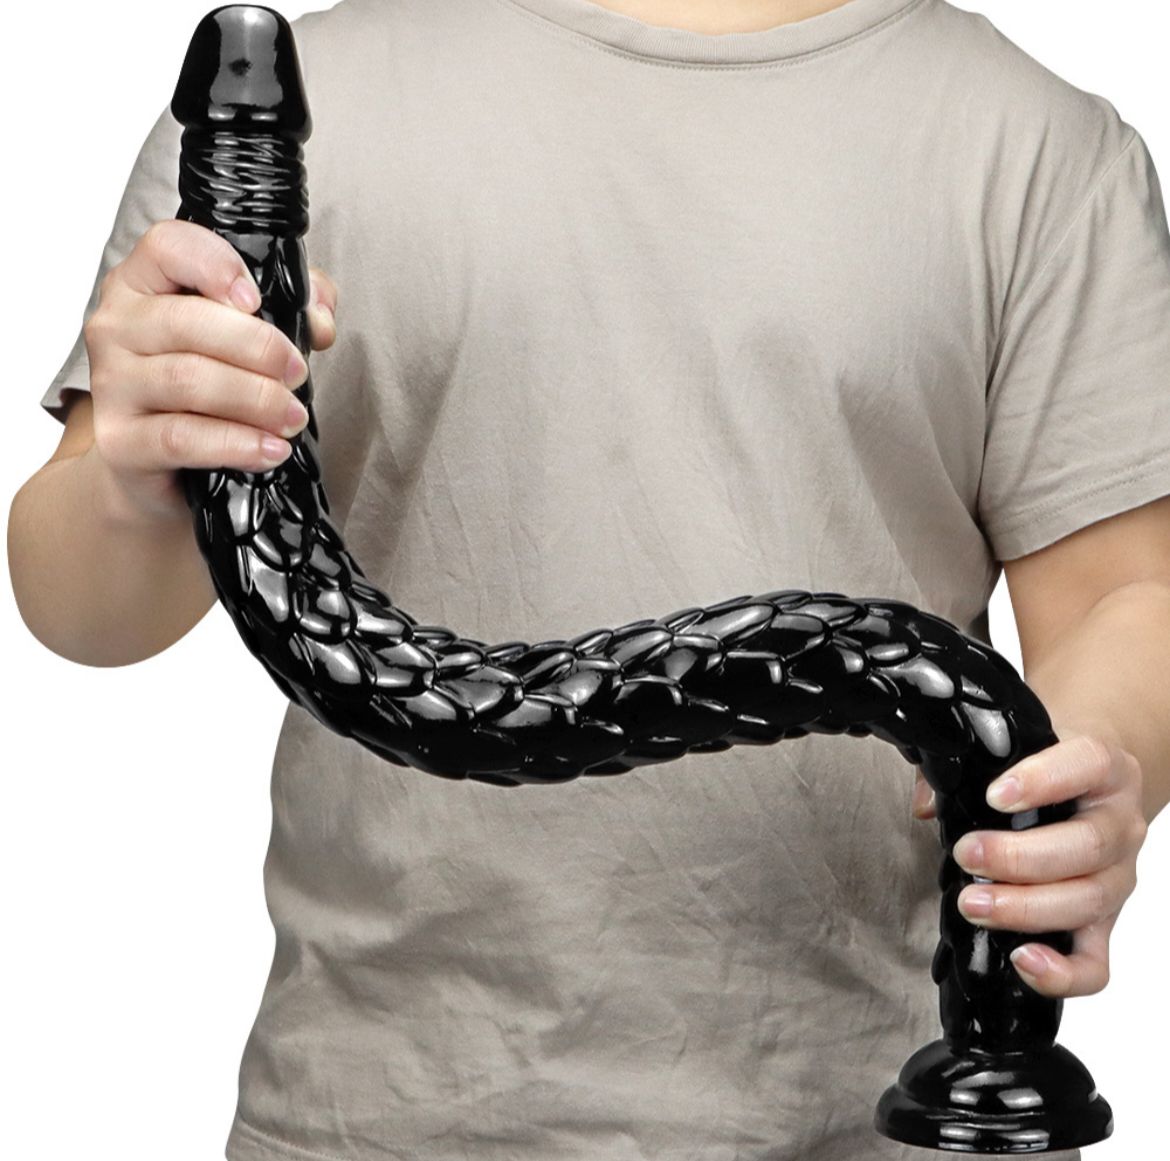 Langer und weicher Dildo, eine echte Anakonda-Schlange. Ein 62 cm langer Dildo mit starkem Saugstopfen.